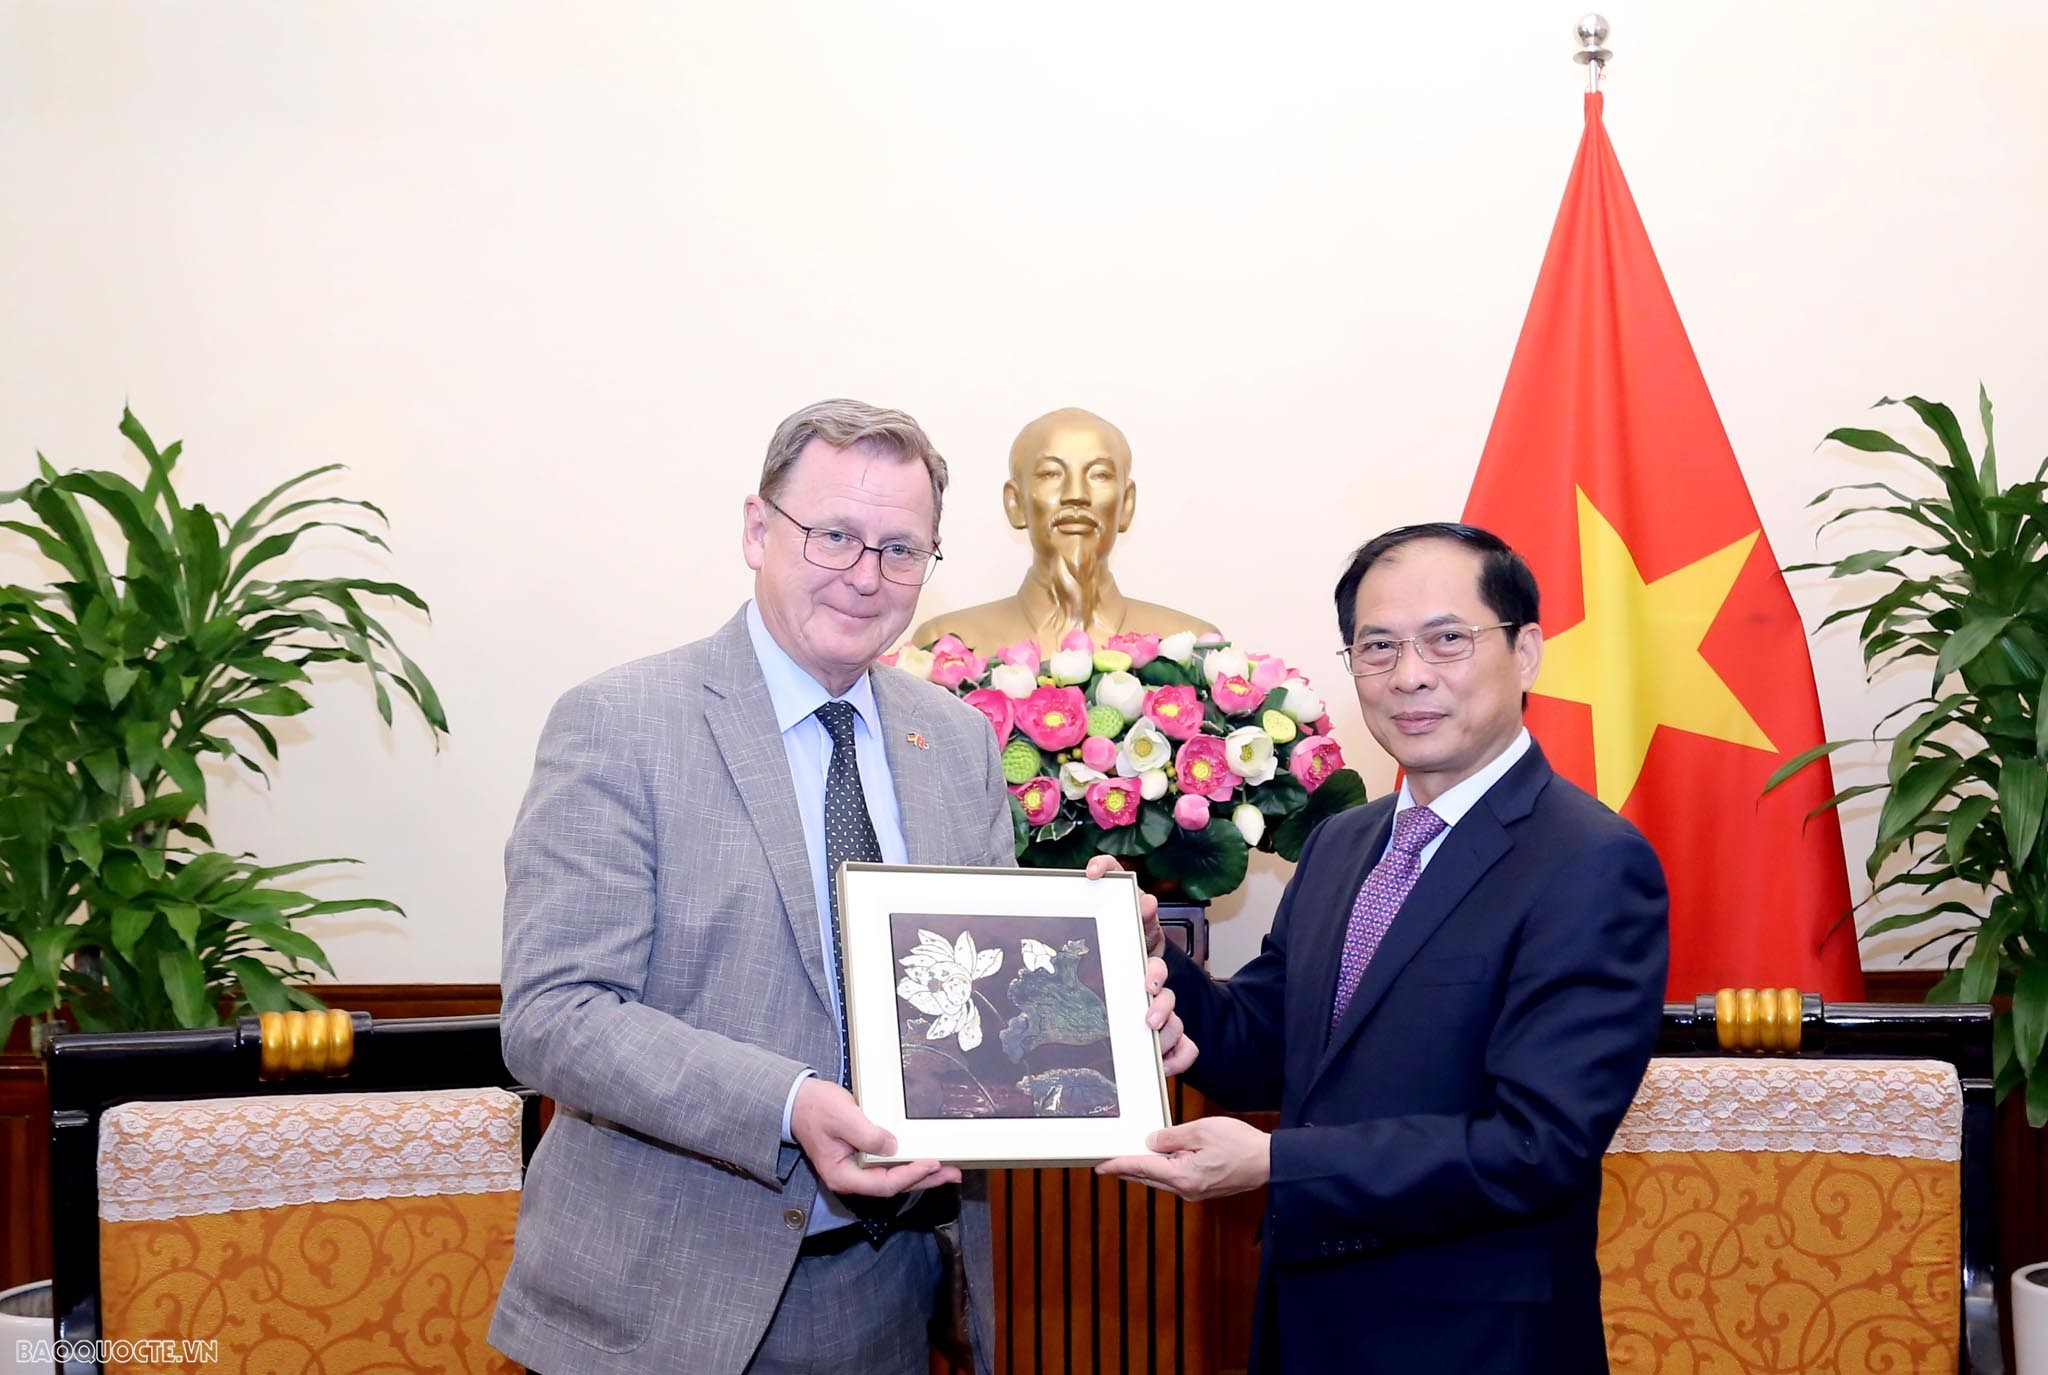 Bộ trưởng Ngoại giao Bùi Thanh Sơn tiếp Thủ hiến bang Thuringia, cùng đoàn doanh nghiệp Đức đang có chuyến thăm và làm việc tại Việt Nam